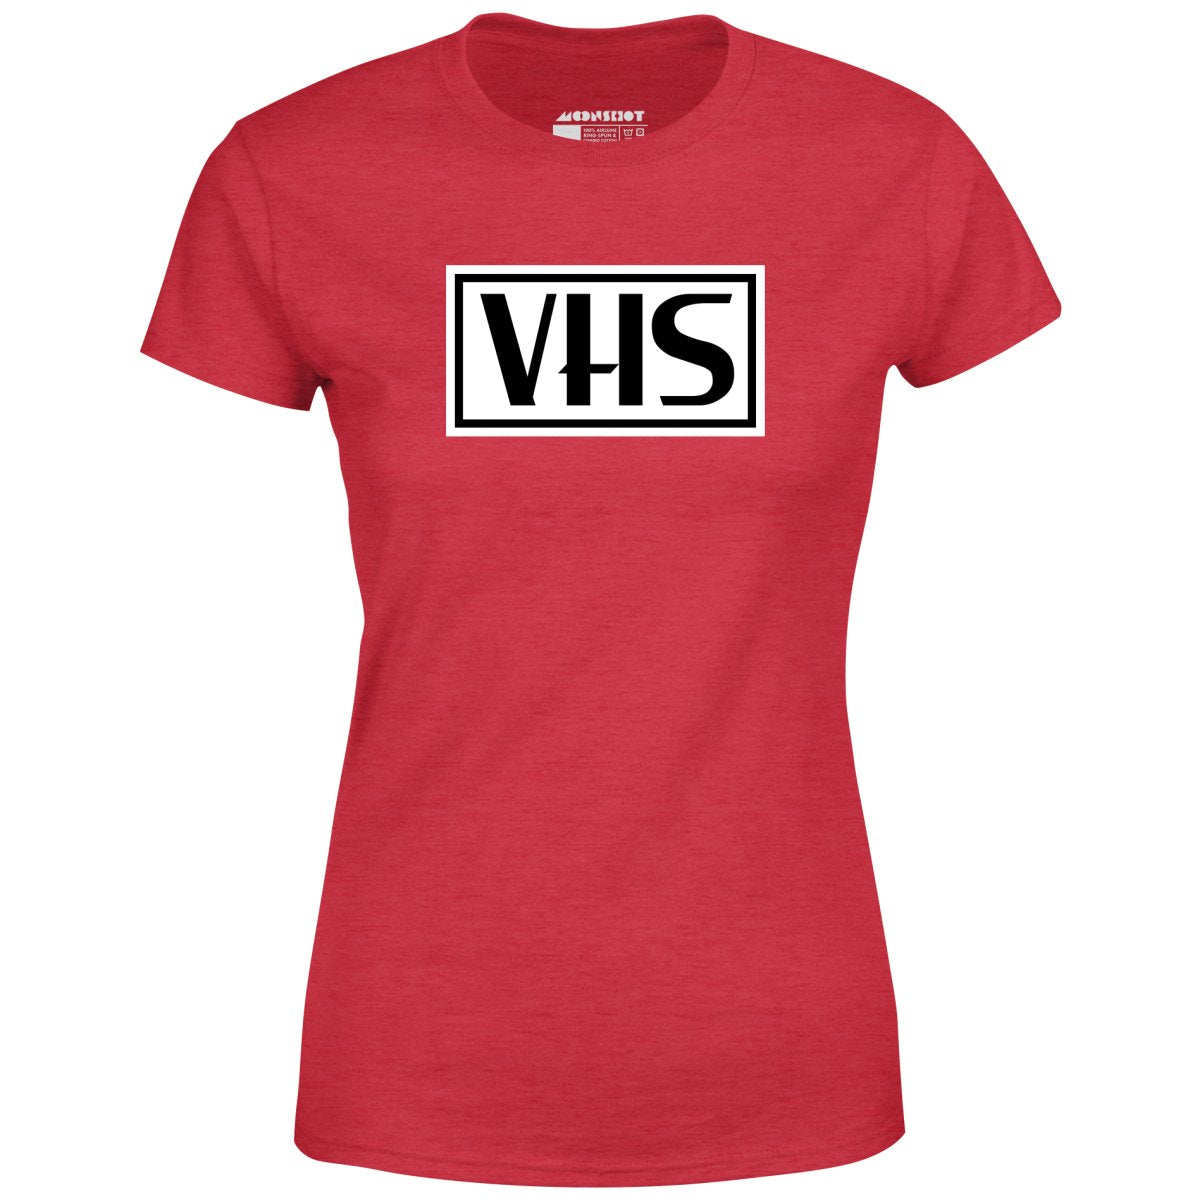 VHS - Women's T-Shirt